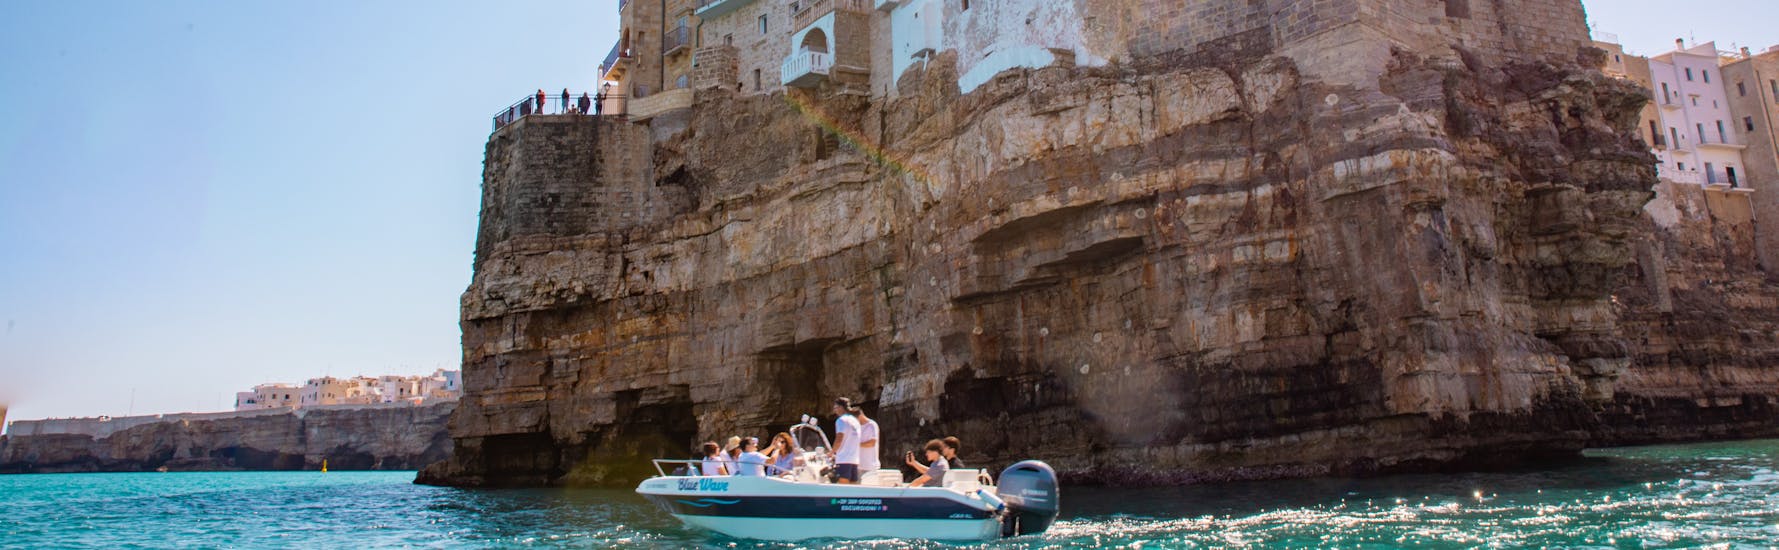 De boot van Blue Wave die Polignano a Mare doorkruist tijdens de Privé Boottocht naar de Grotten van Polignano a Mare met Apéritif.